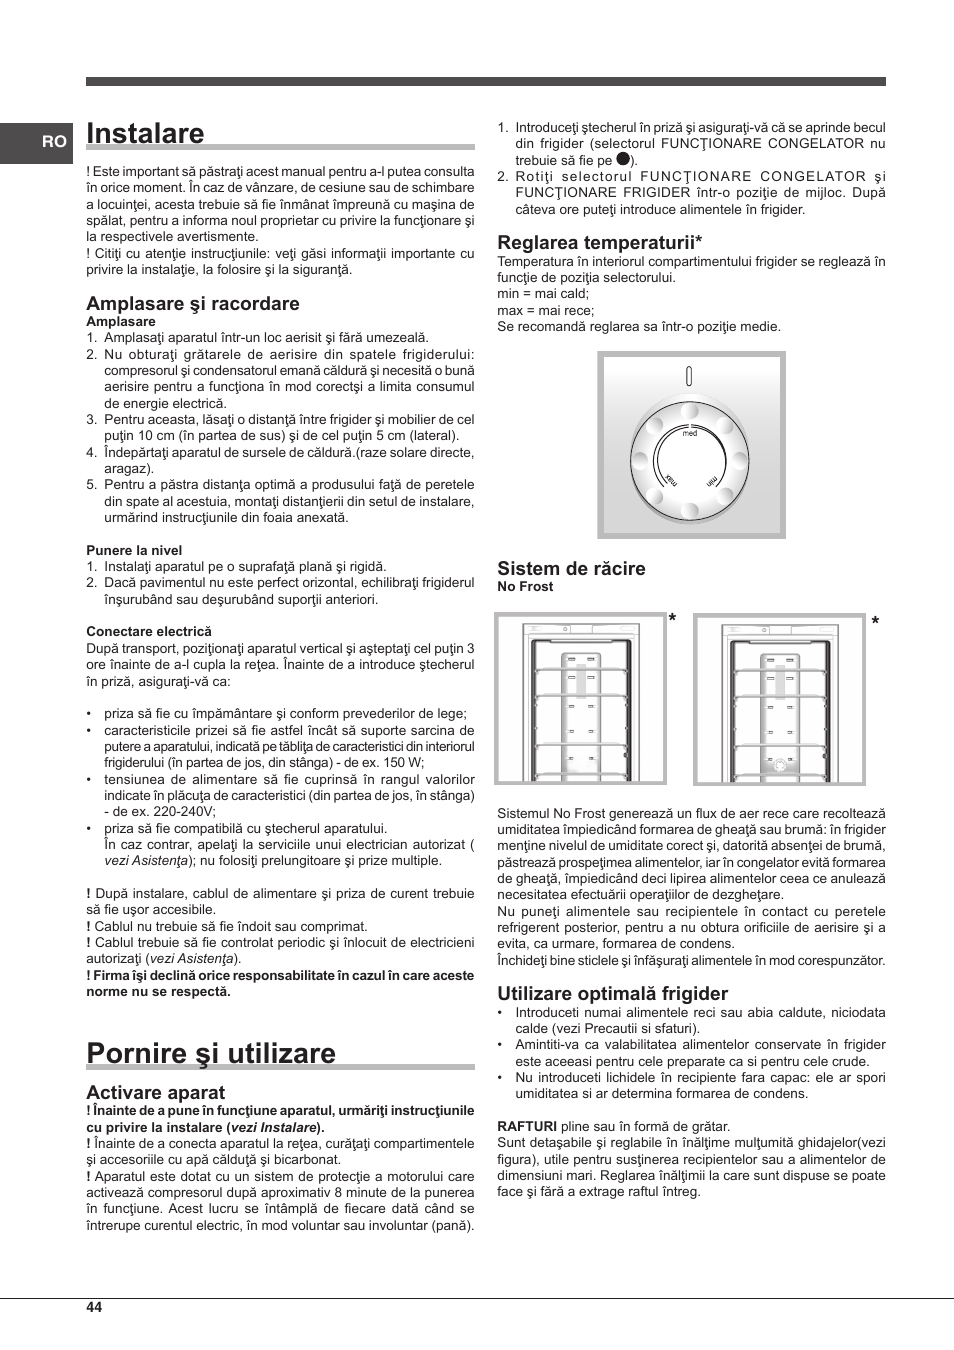 Instalare, Pornire şi utilizare, Amplasare şi racordare | Indesit  BIAA-13-F-H User Manual | Page 44 / 48